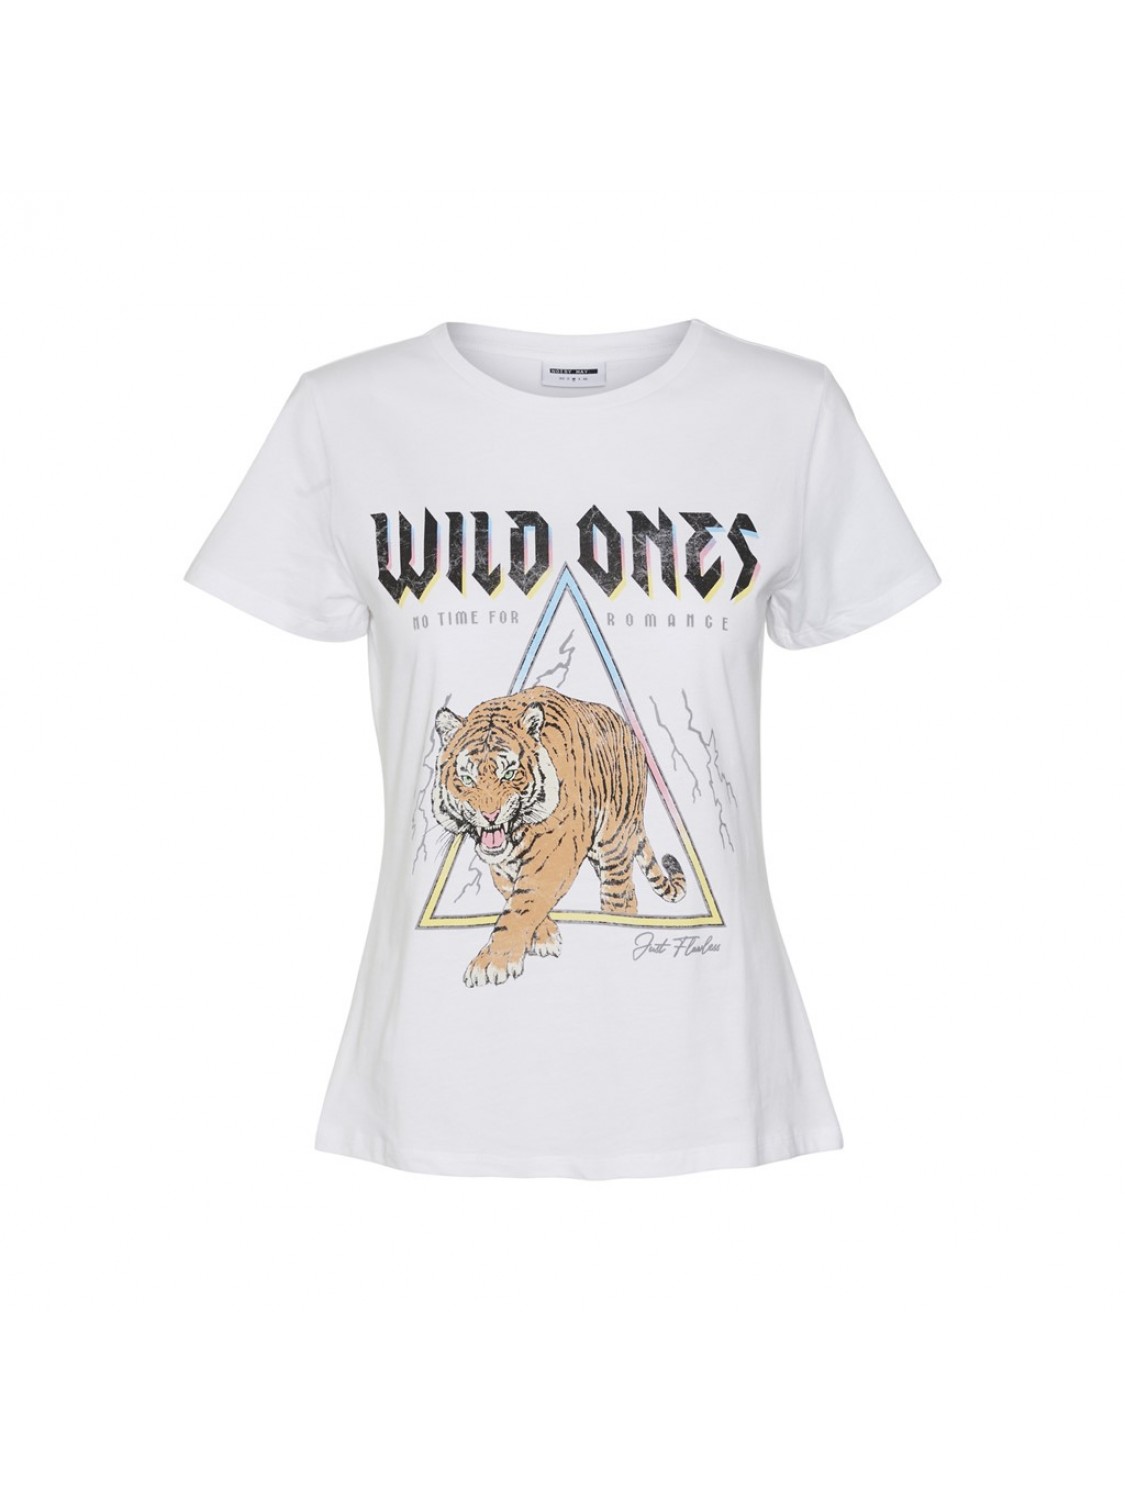 Camiseta Wild ones